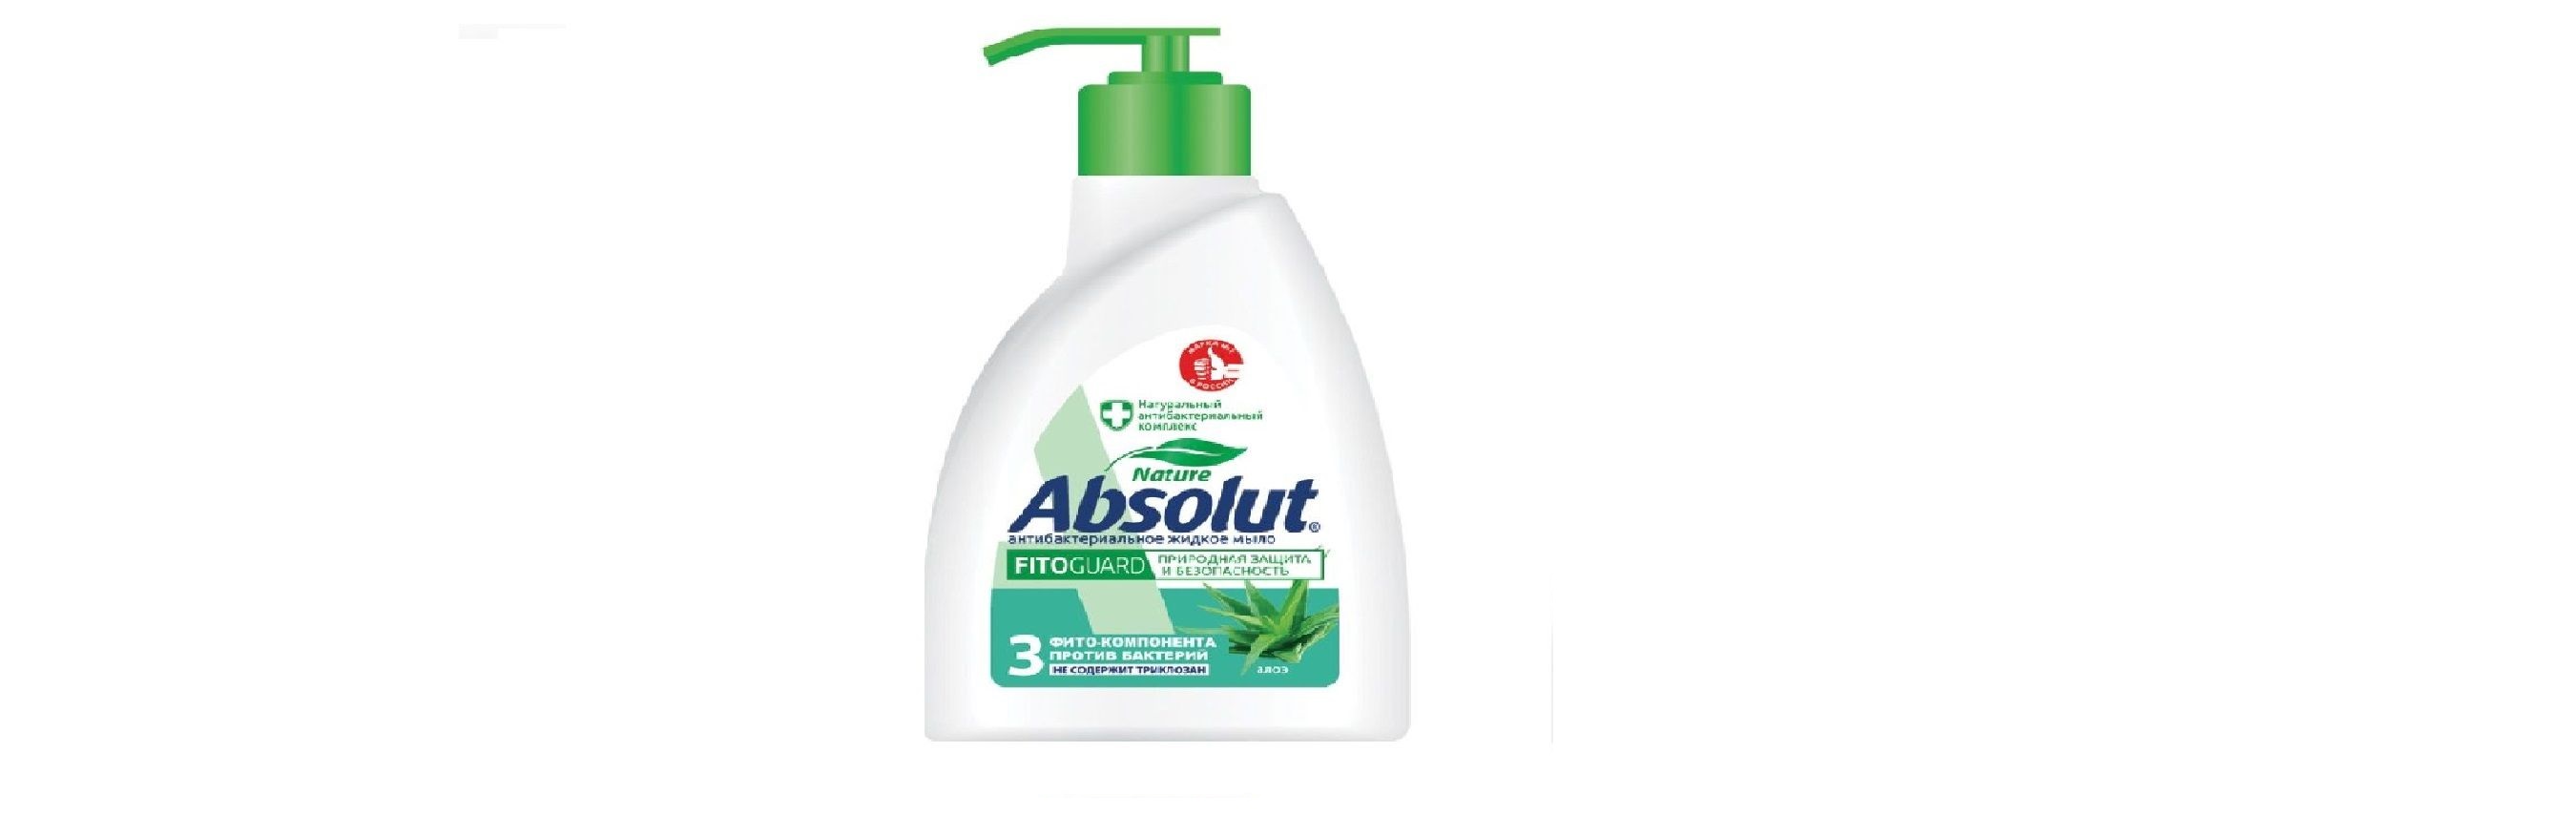 Мыло жидкое Absolut Алоэ Антибактериальное 250 мл 6 штук мыло жидкое absolut алоэ антибактериальное 250 мл х 3 шт